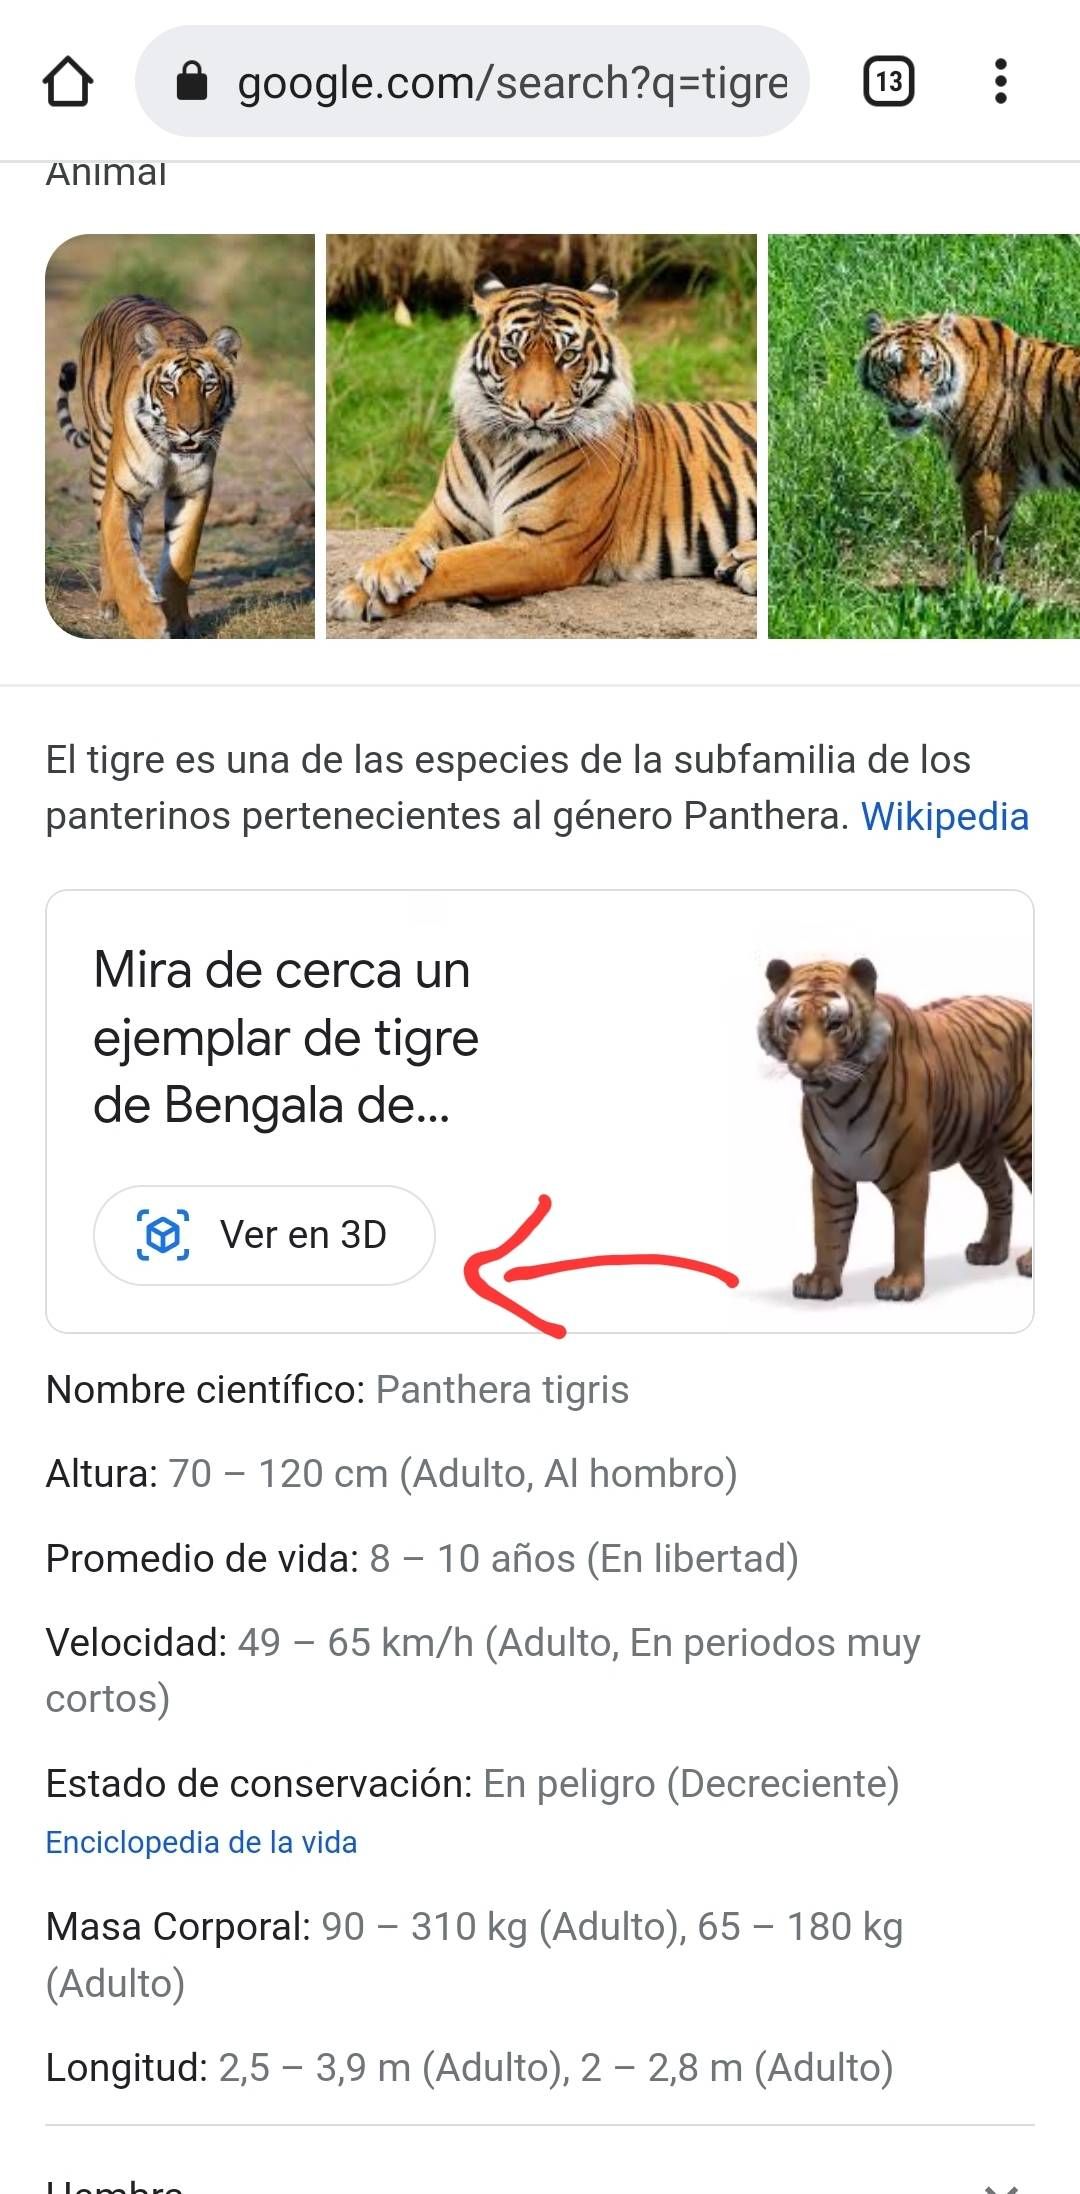 El truco de Google para ver animales 3D en casa